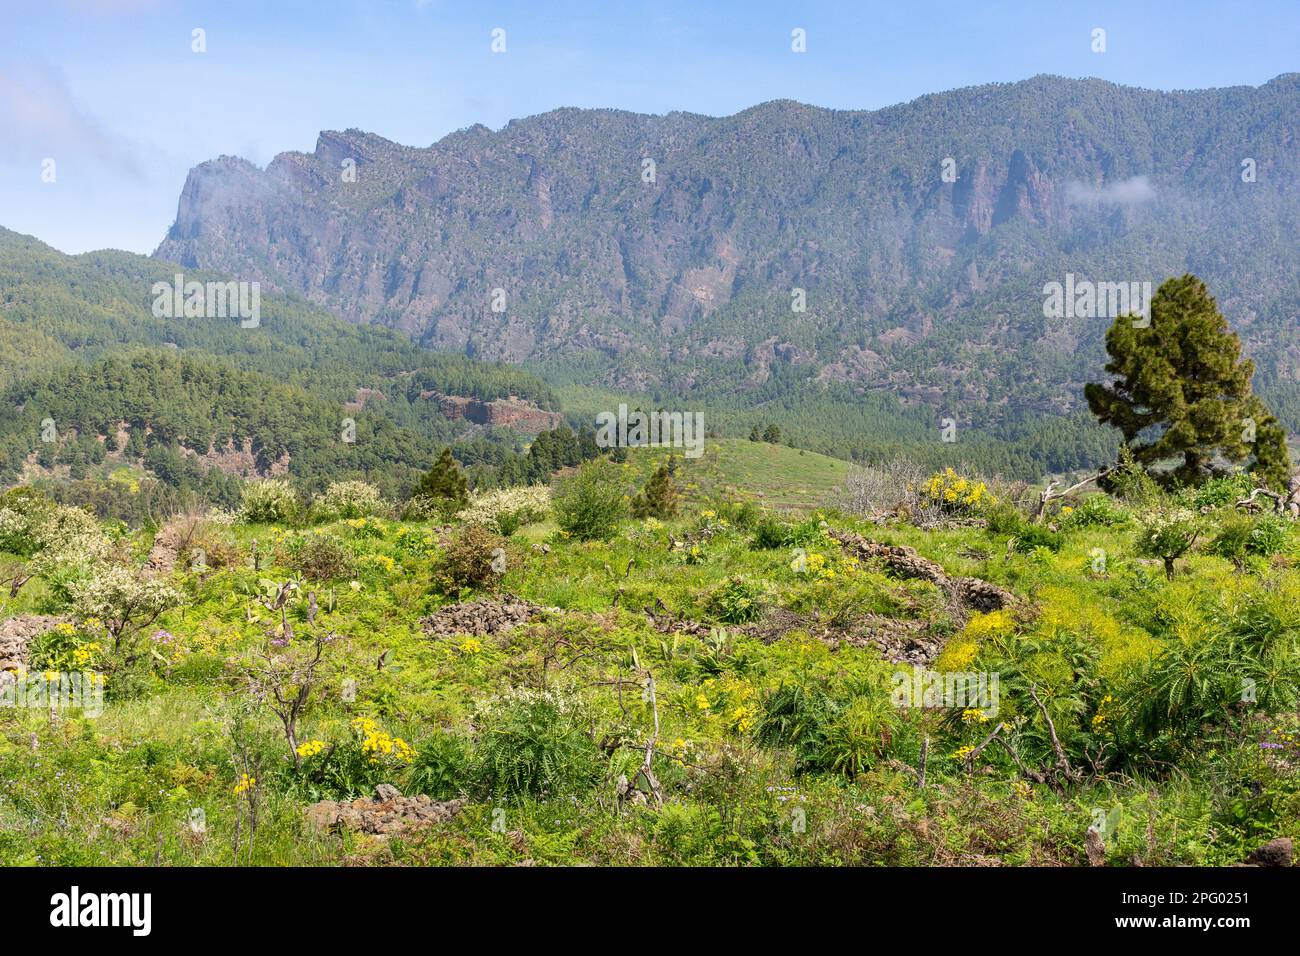 Parque Nacional de la Caldera de Taburiente (Caldera de Taburiente National Park), Ciudad de El Paso, La Palma, Canary Islands, Spain Stock Photo